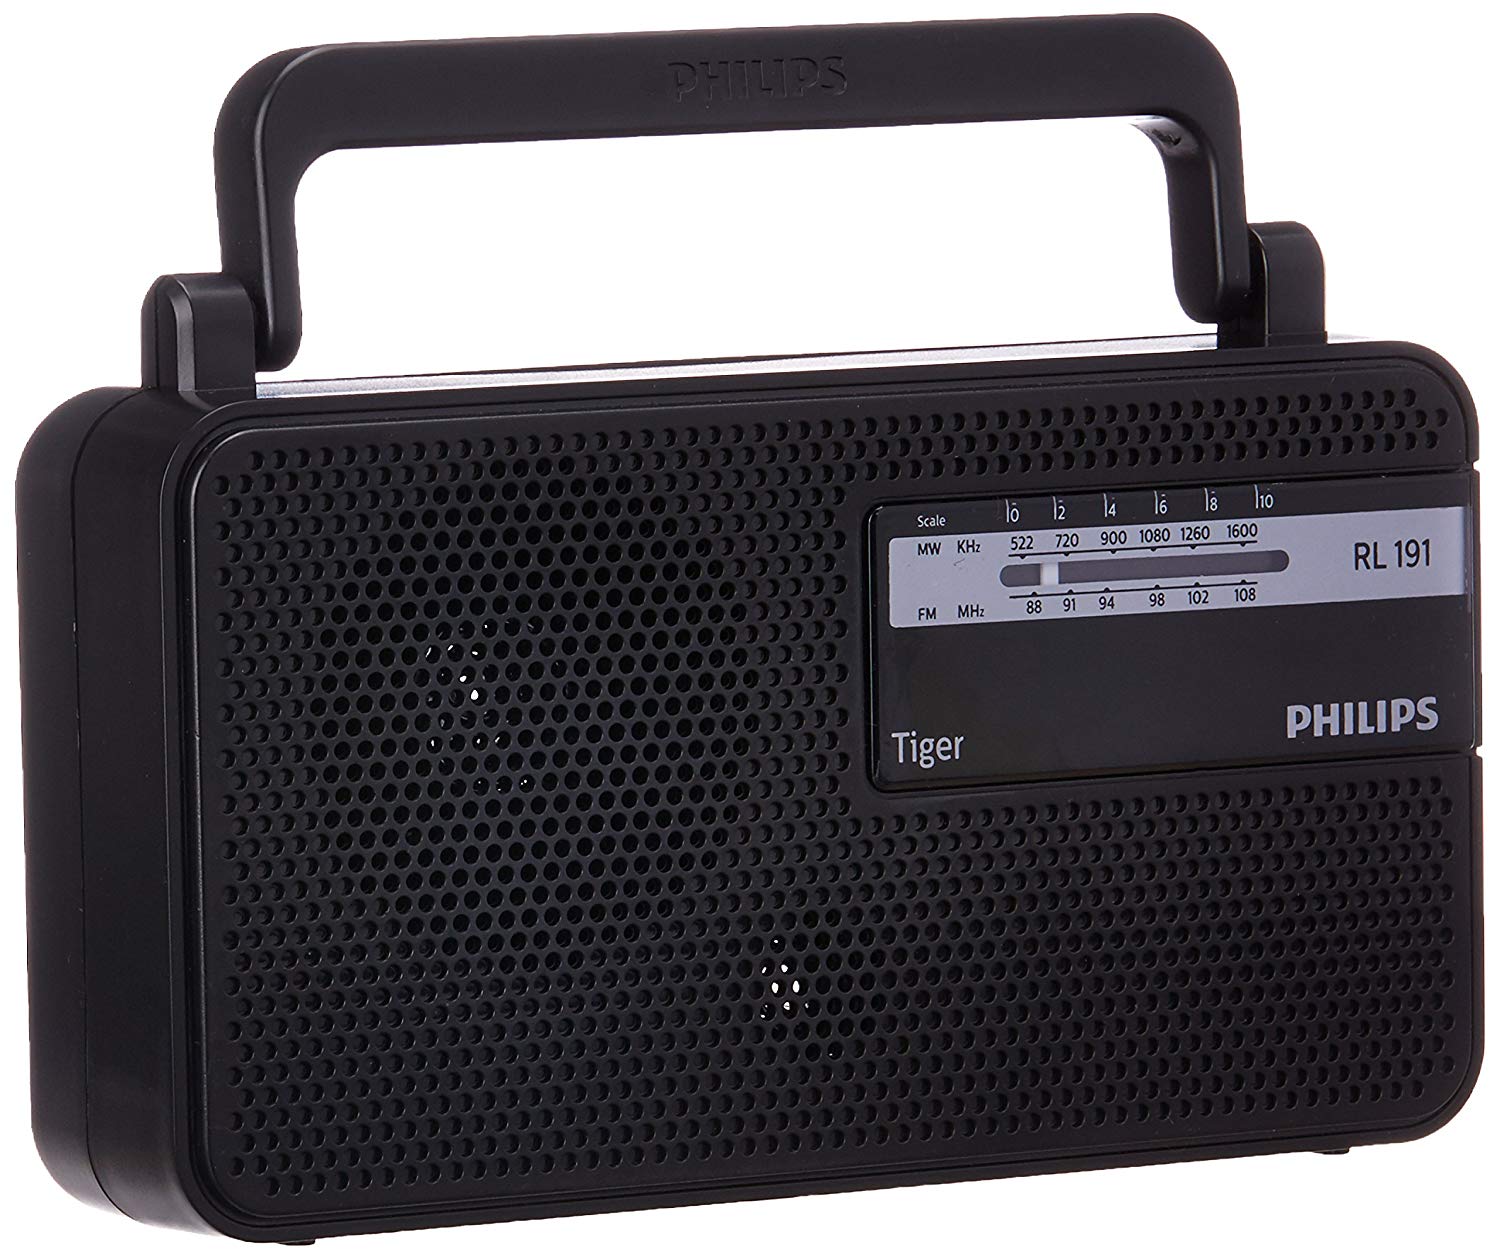 Philips RL191 FM Radio Price in India